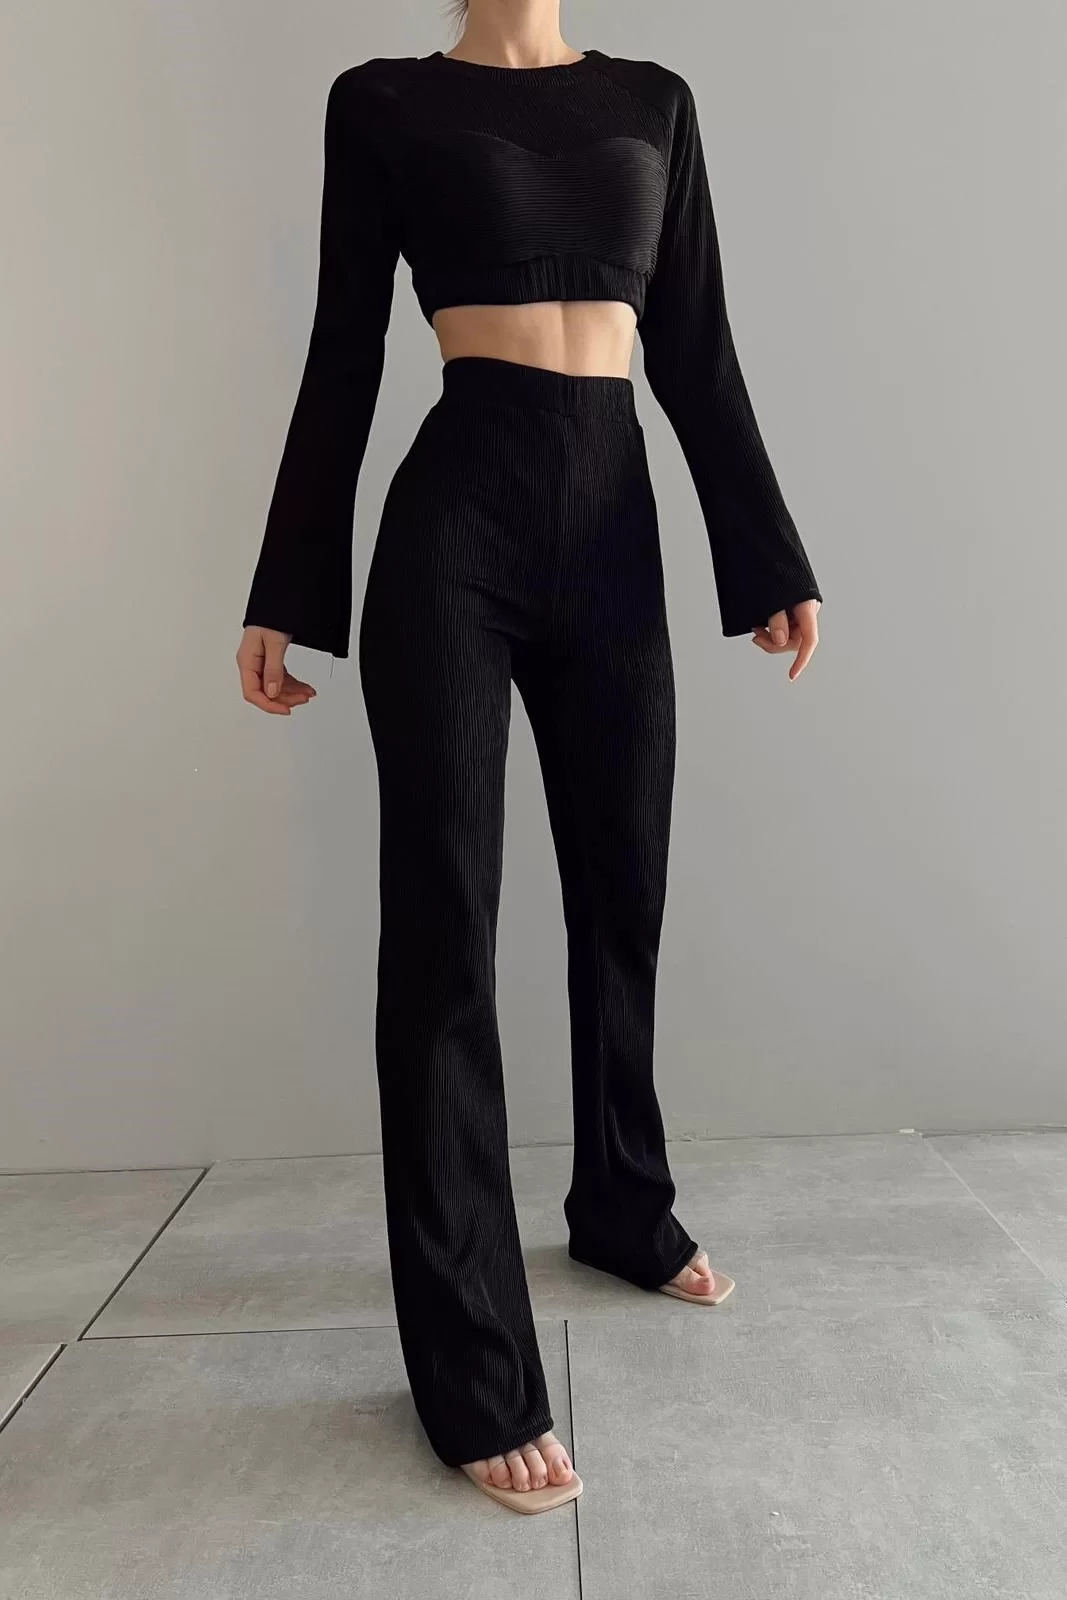 Kadın Siyah Oversize Crop Pantolon Takım 0990-2739